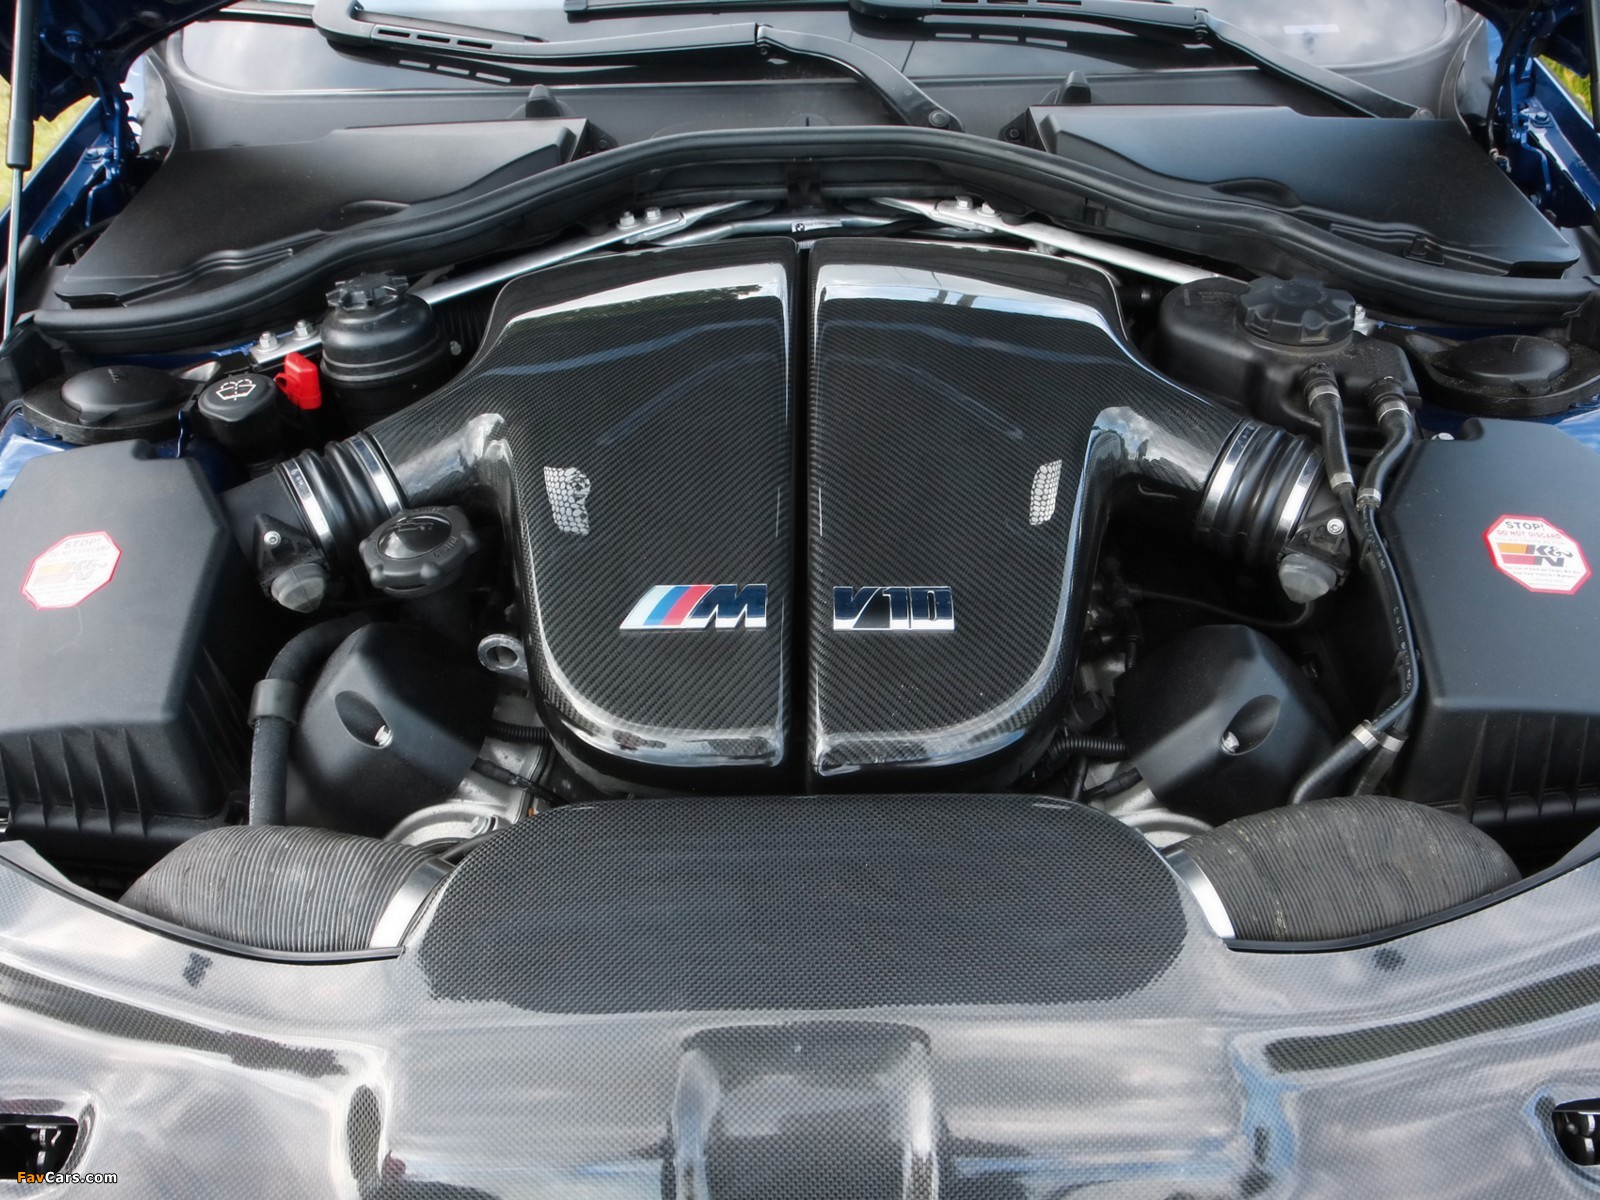 3 е мотор. V10 BMW m5 мотор. S85 BMW мотор. Мотор 3.3 БМВ м3. BMW m5 e60 s85.